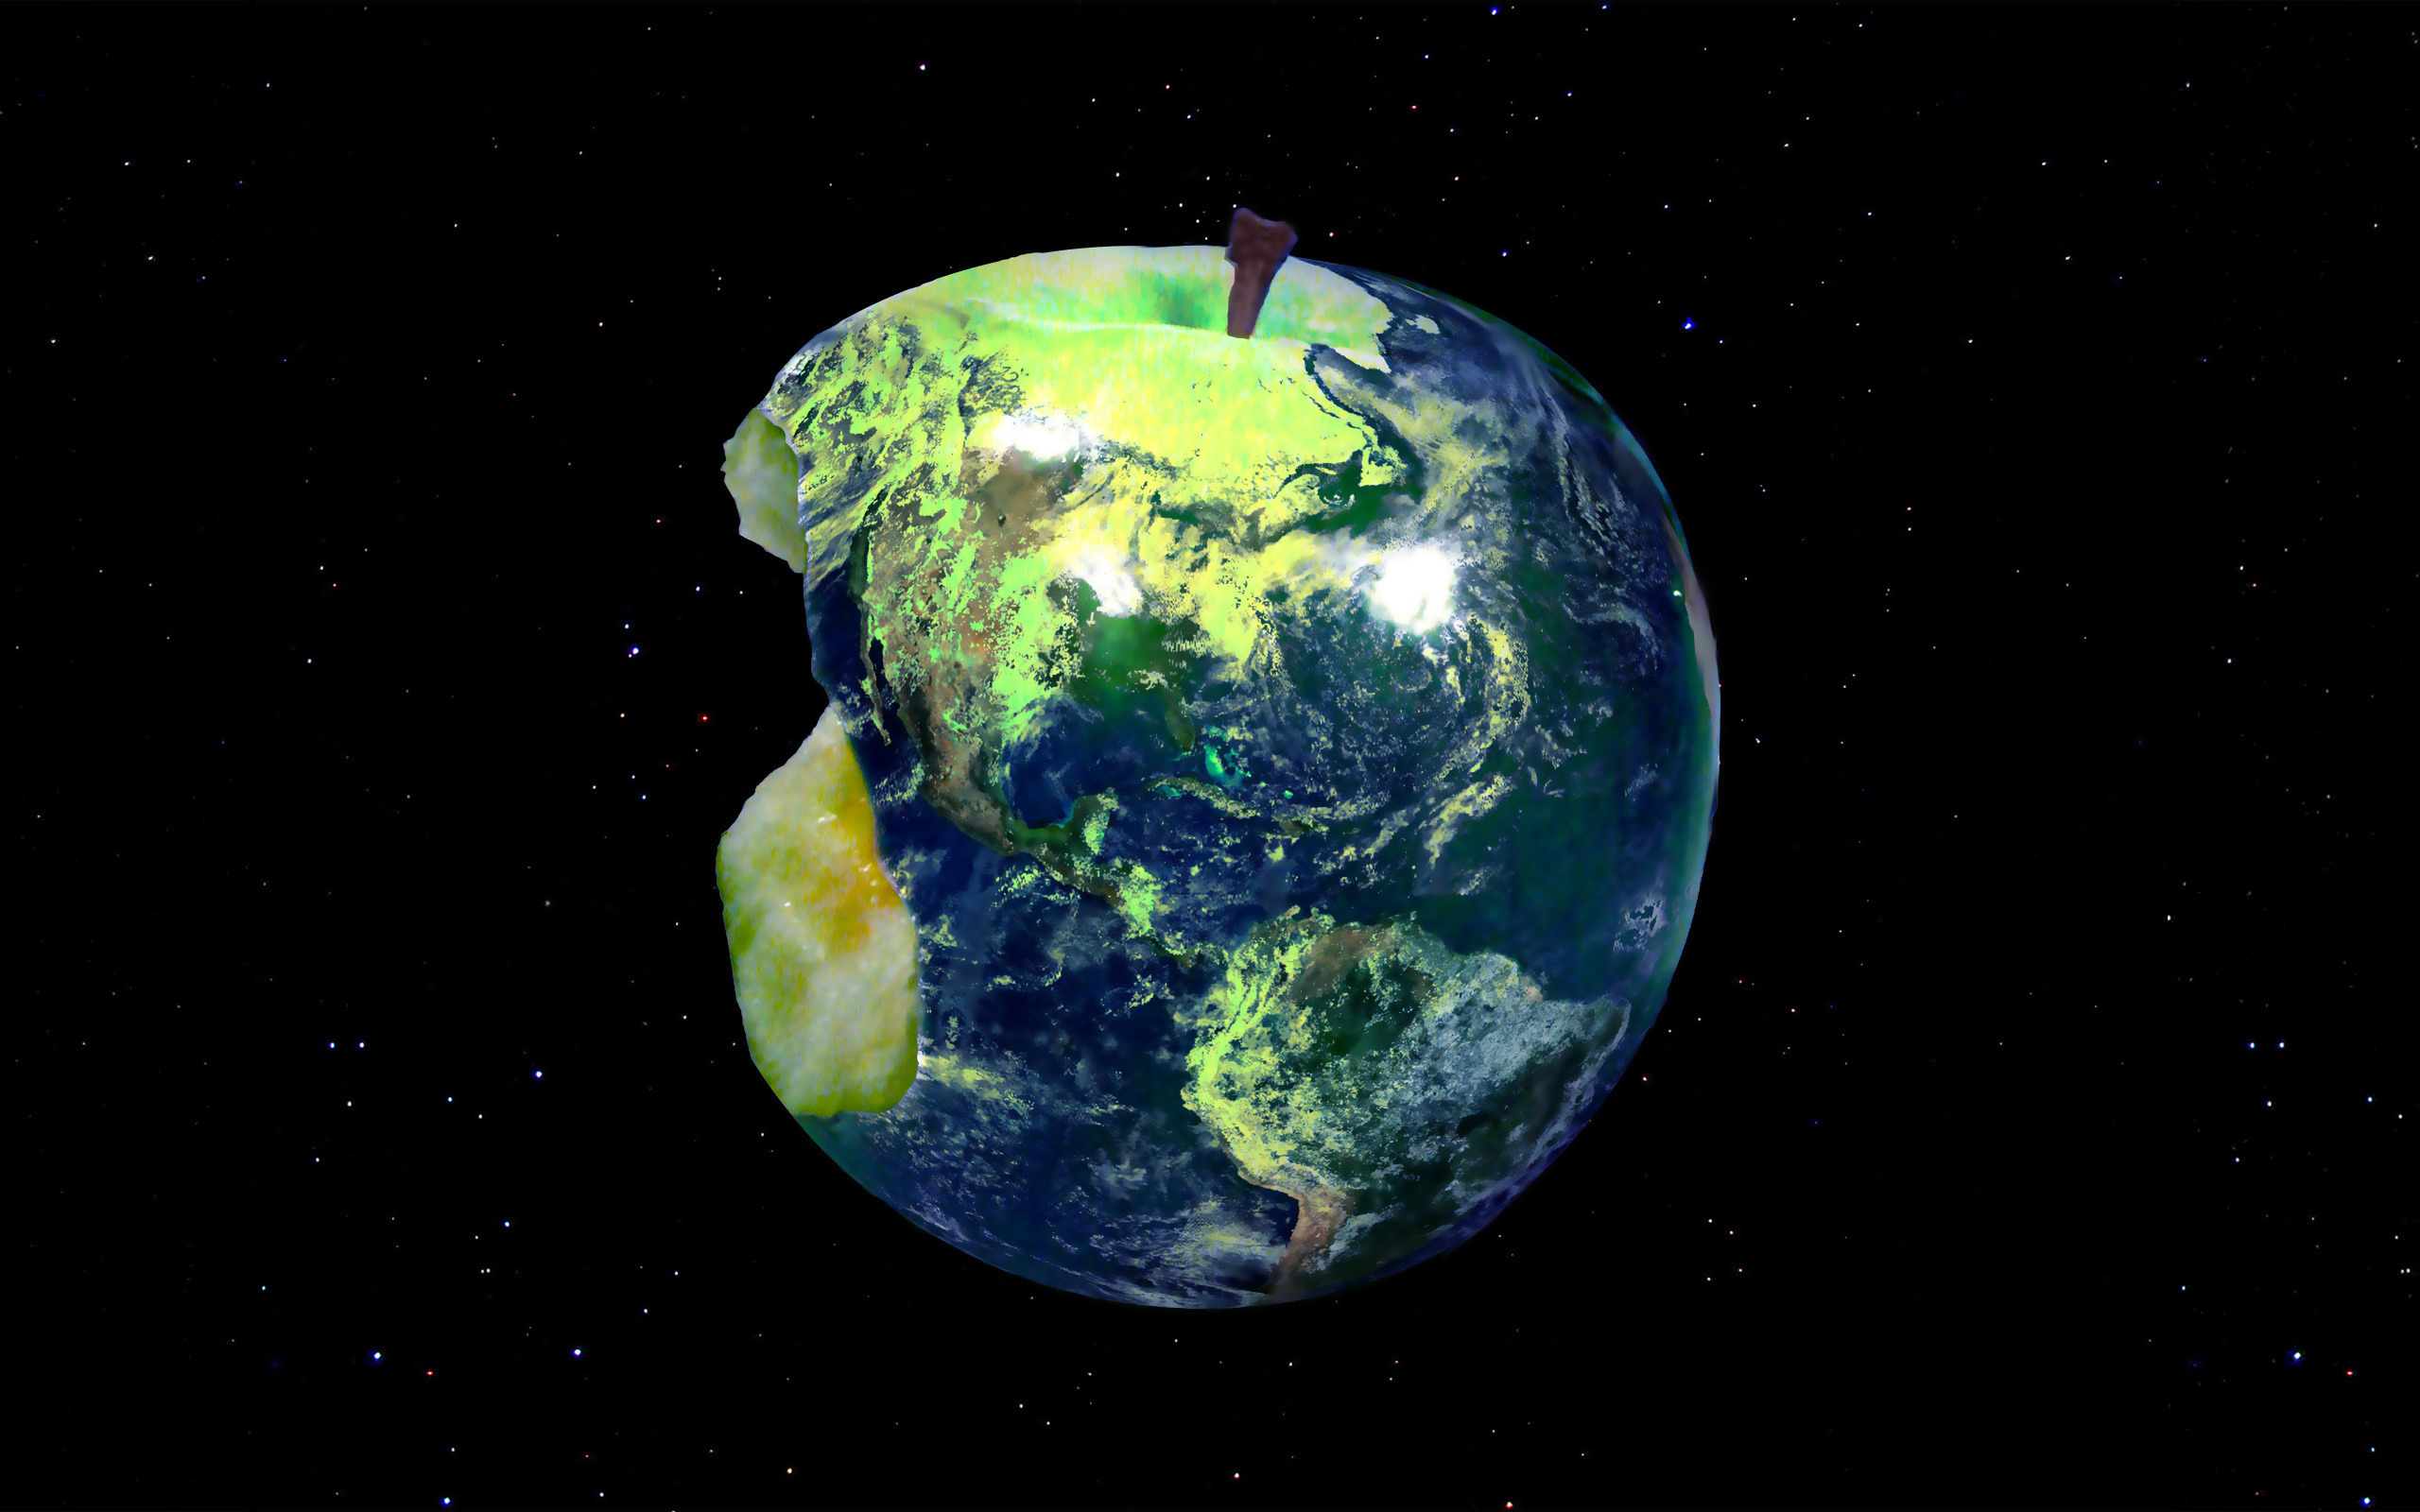  Apple  Earth  Wallpapers  PixelsTalk Net